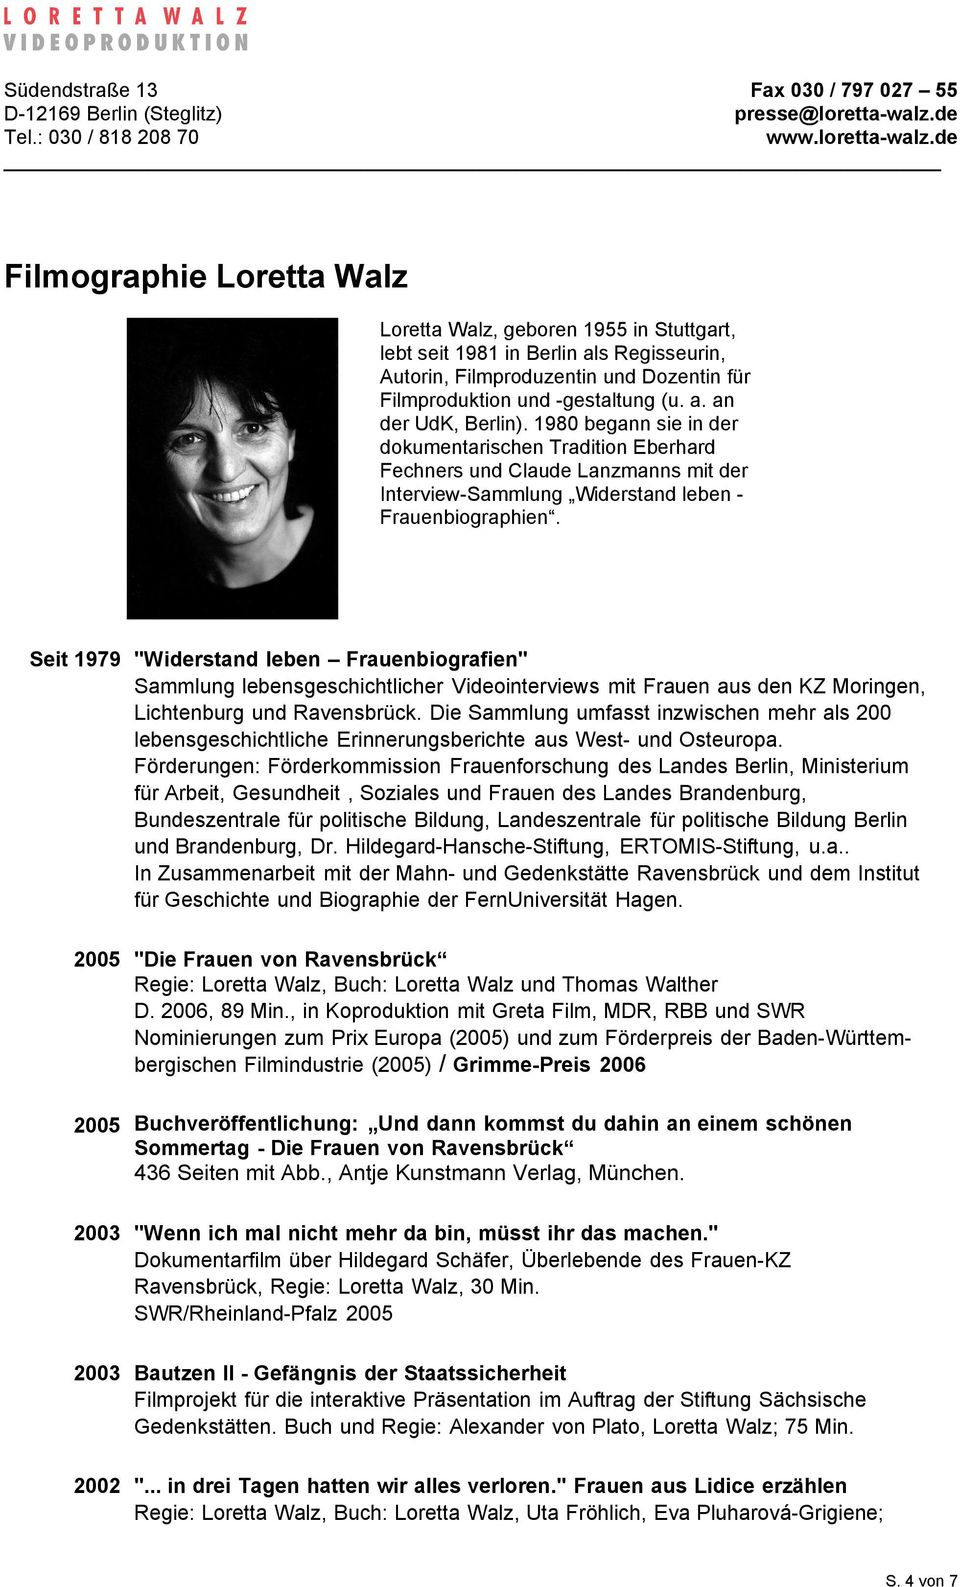 Seit 1979 "Widerstand leben Frauenbiografien" Sammlung lebensgeschichtlicher Videointerviews mit Frauen aus den KZ Moringen, Lichtenburg und Ravensbrück.